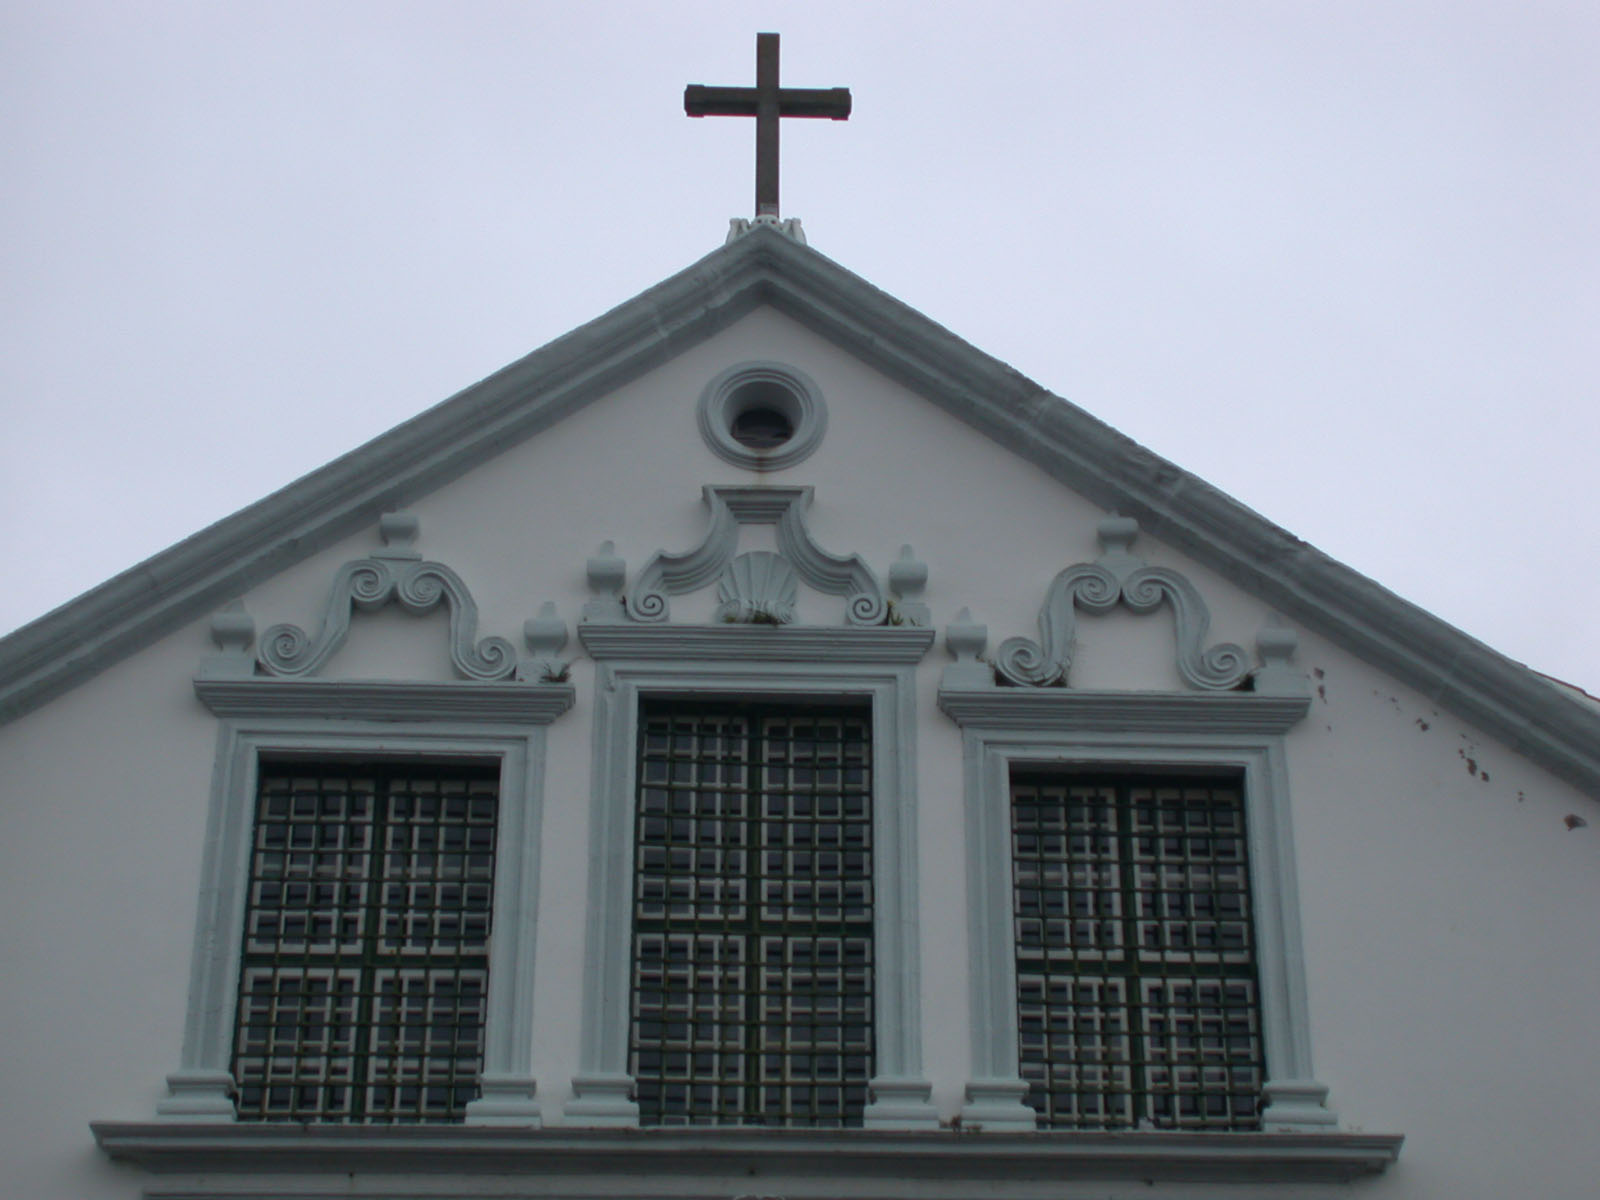 Igreja de Nossa Senhora da Conceição